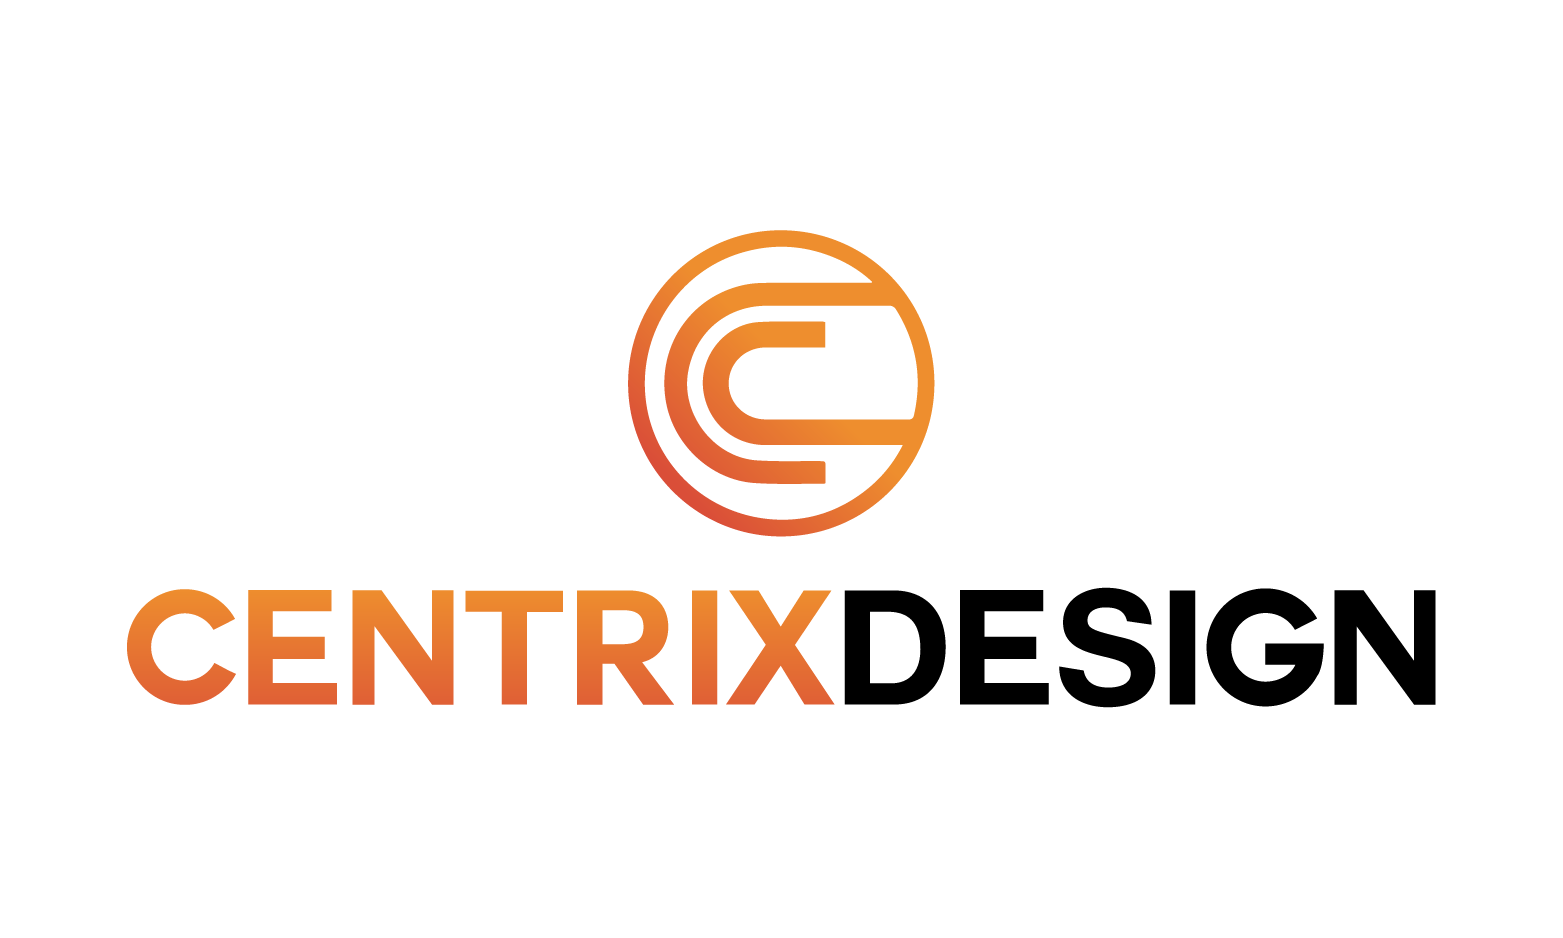 CentrixDesign.com - Creative brandable domain for sale